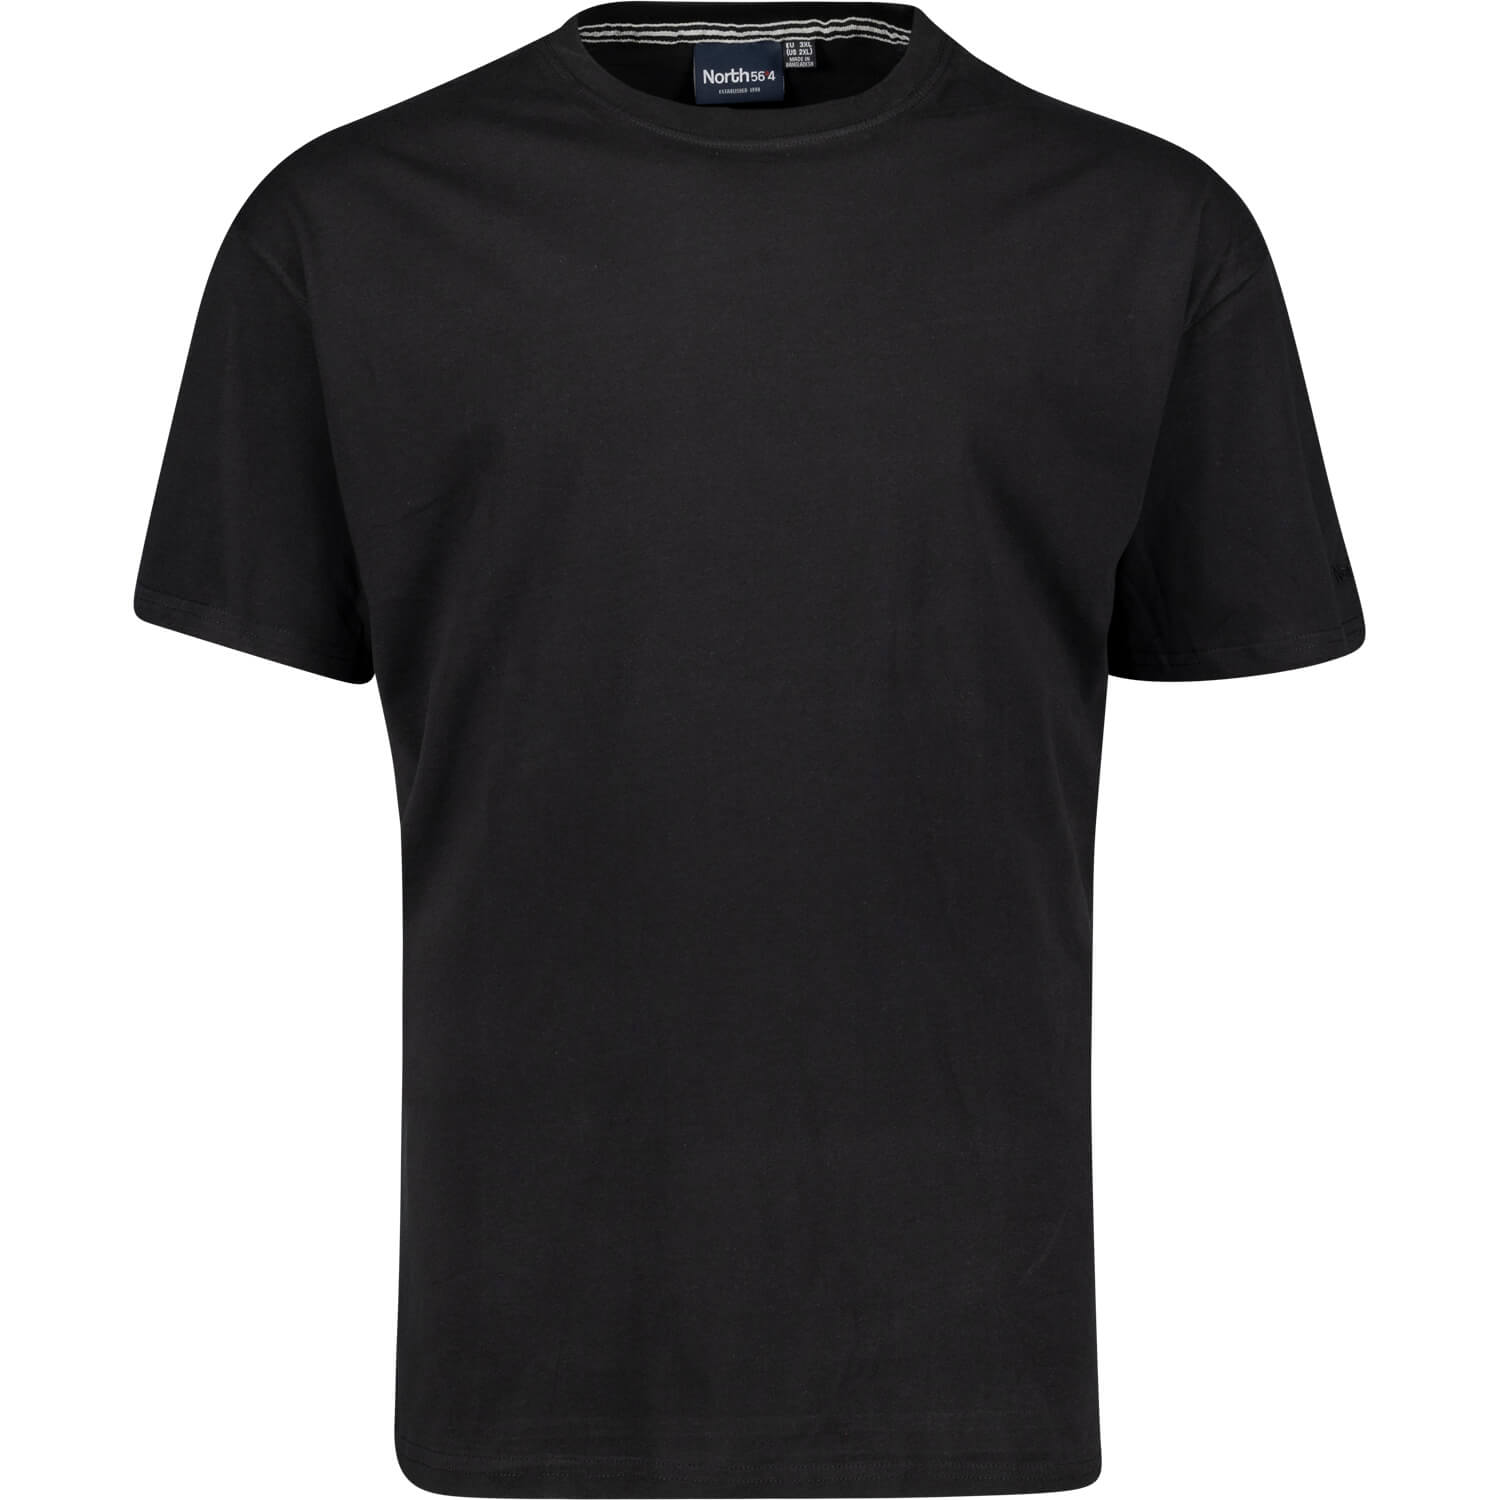 Schwarzes Basic-T-Shirt - Rundhals - North 56°4 bis 8XL